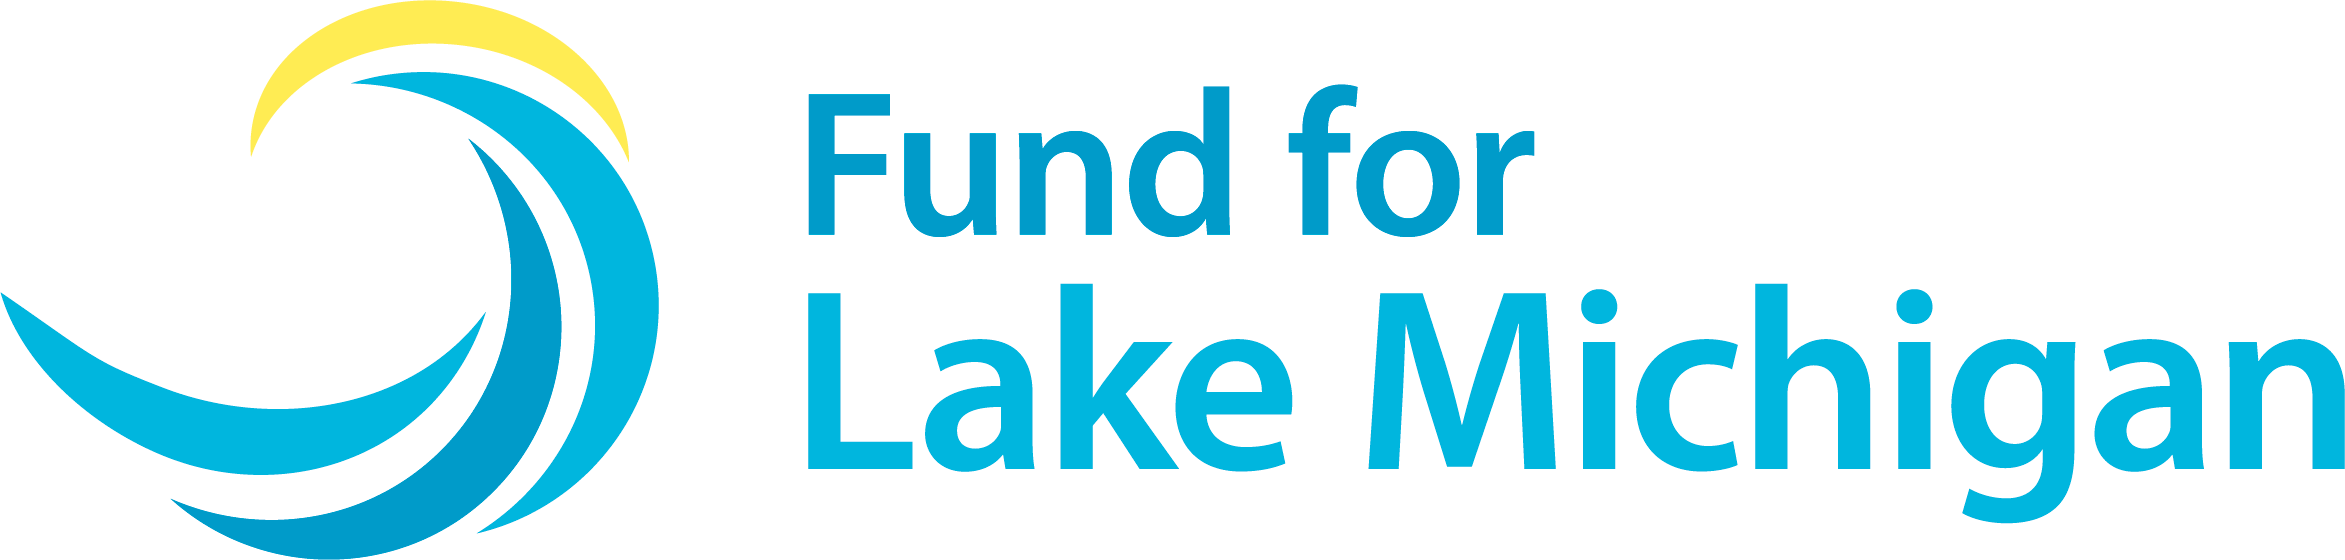 Fund for Lake Michigan